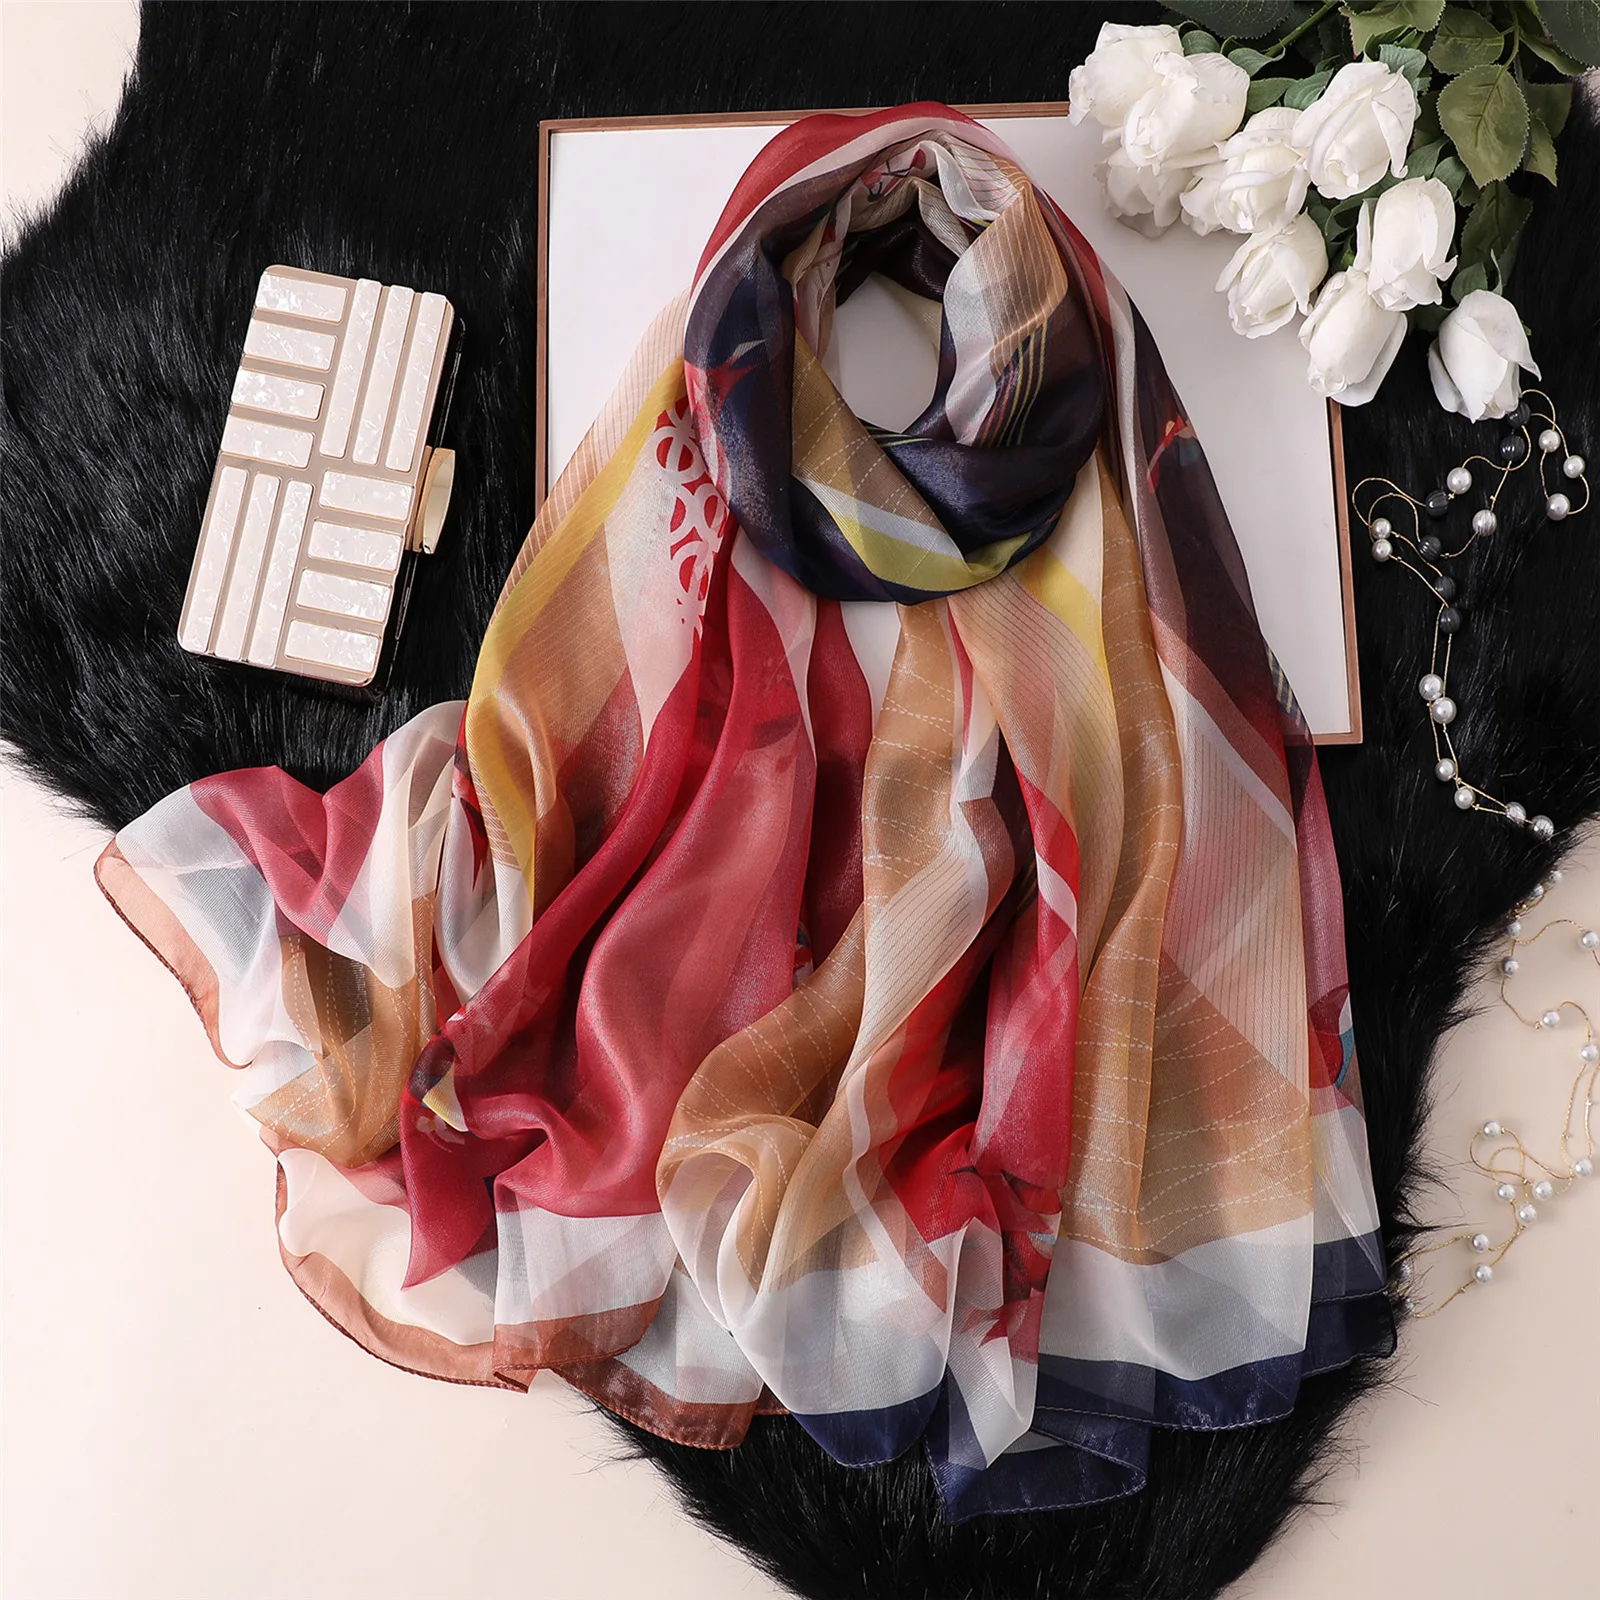 2019 Горячие Элитный бренд Для женщин шарф Винтаж цветочные шелковые шарфы принт платки и палантины пашмины фуляровая Бандана Хиджаб